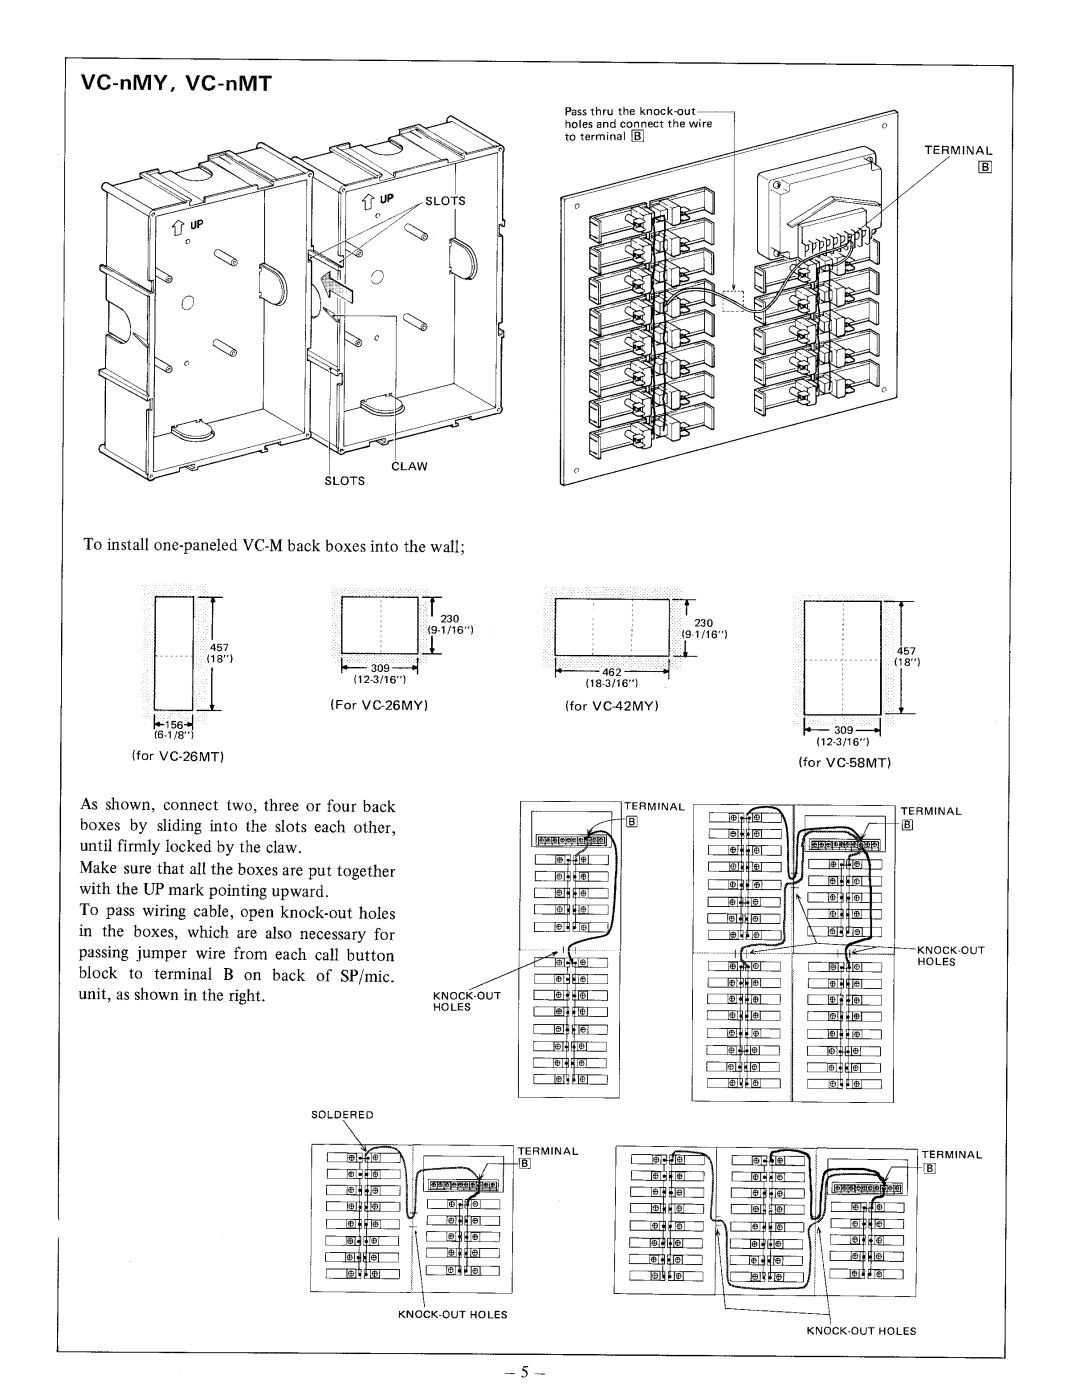 Aiphone VC-K, VCH-8, VCH-16, VC-58MT, VC-26MT manual 